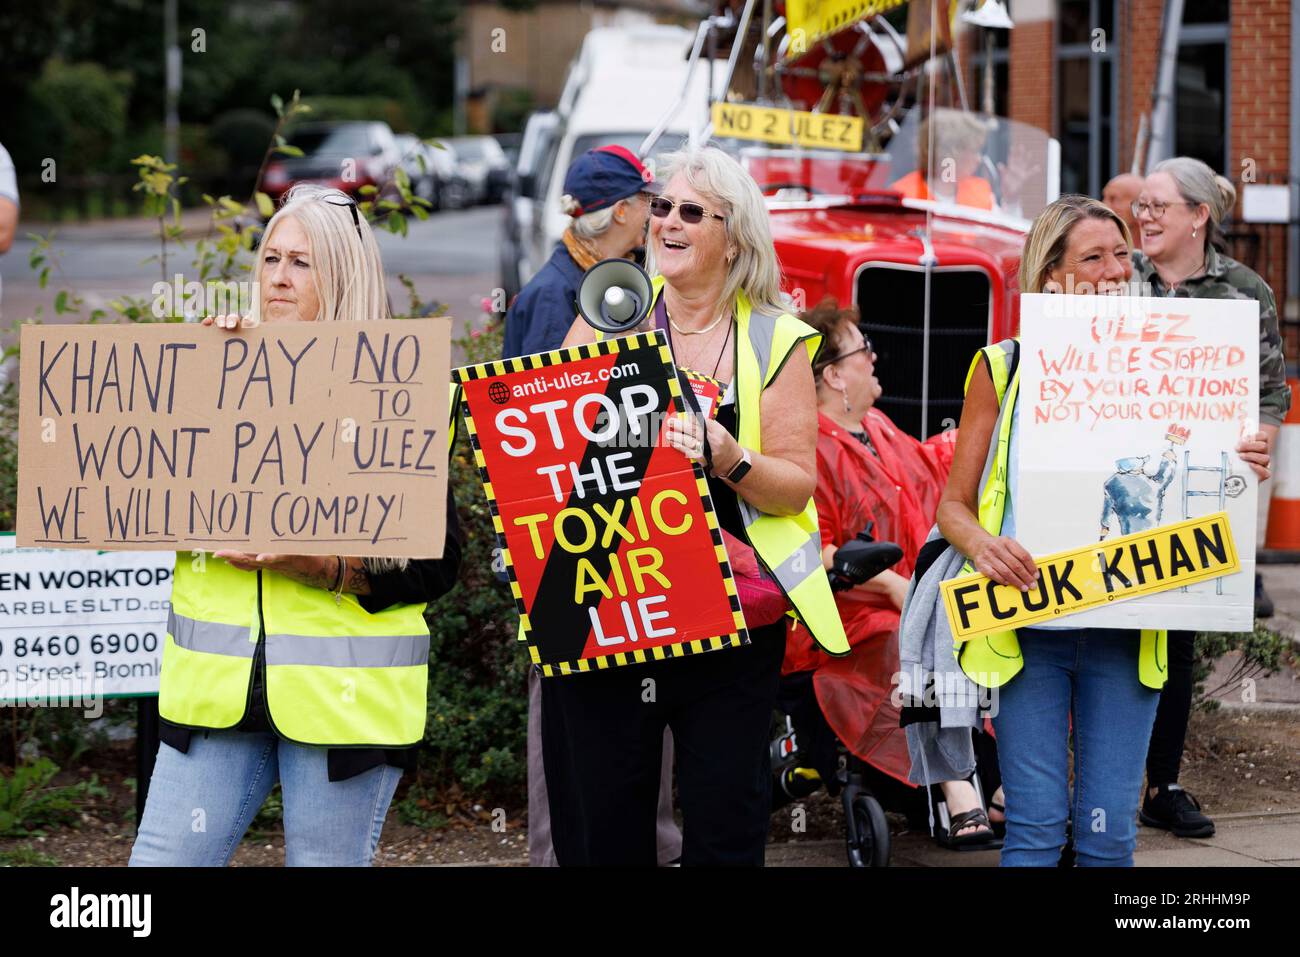 Protesta anti-Ulez a Bromley, a est di Londra questo pomeriggio. Nella foto: I manifestanti sollevano cartelli. Immagine ripresa il 12 agosto 2023. © Belinda Jiao jiao Foto Stock